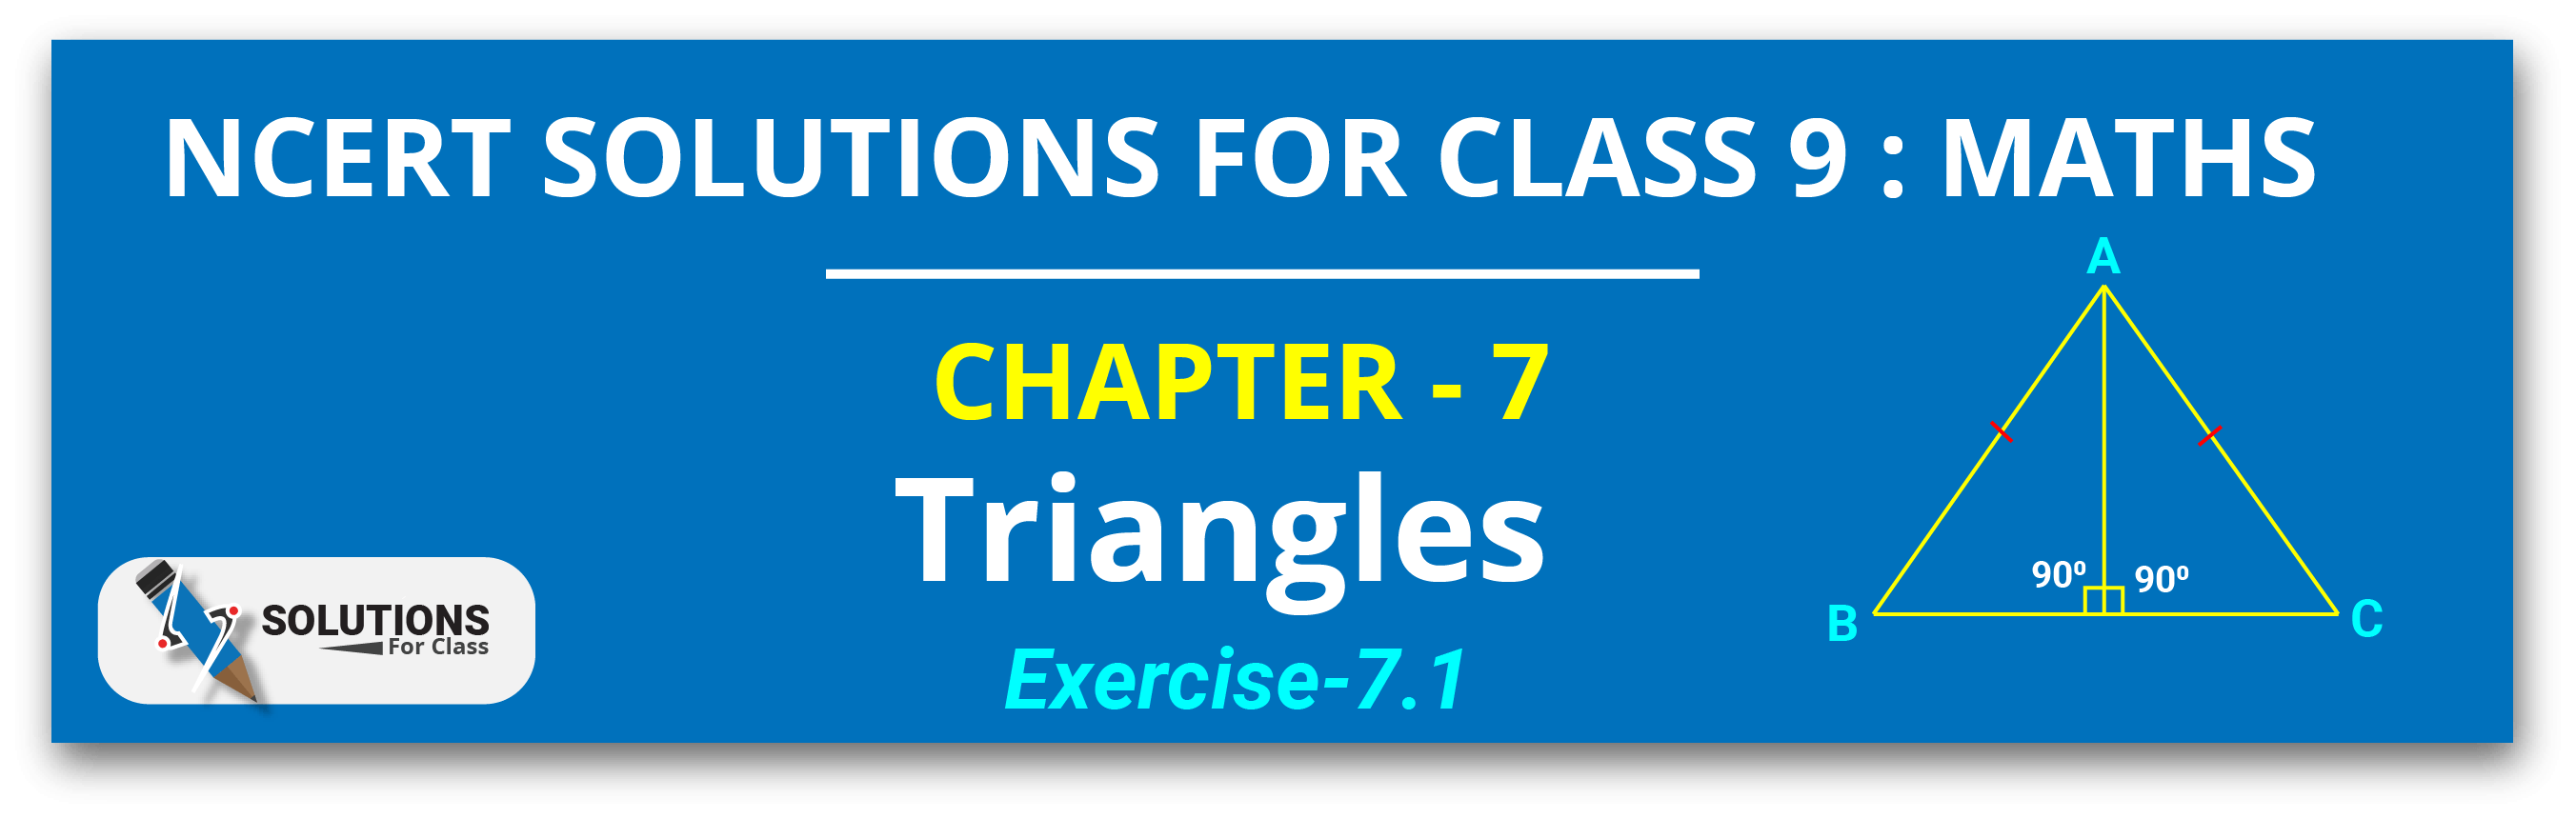 NCERT Solutions For Class 9, Maths, Chapter 7, Exe 7.1